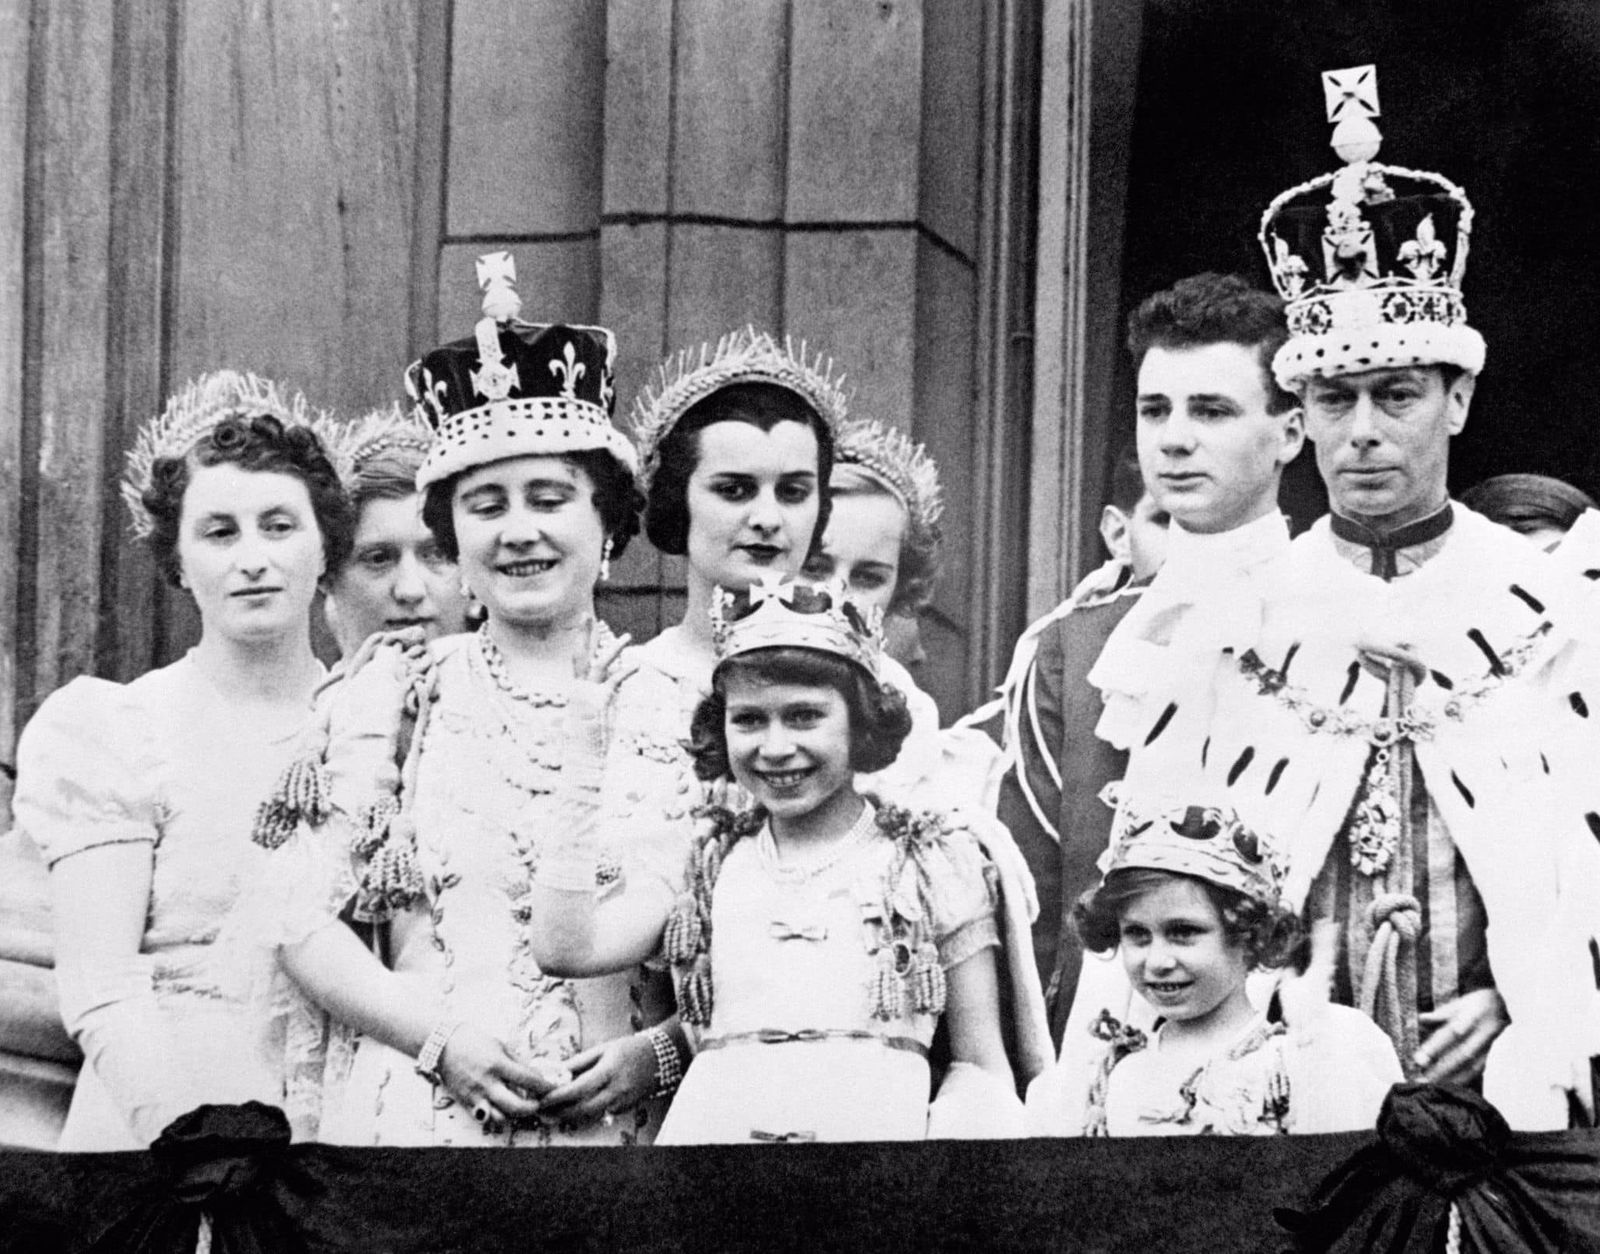 صورة للملكة إليزابيث في الشرفة الملكية لقصر باكينجهام بعد تتويج والدها الملك جورج السادس ملكاً على بريطانيا - 1937 - facebook.com/TheBritishMonarchy